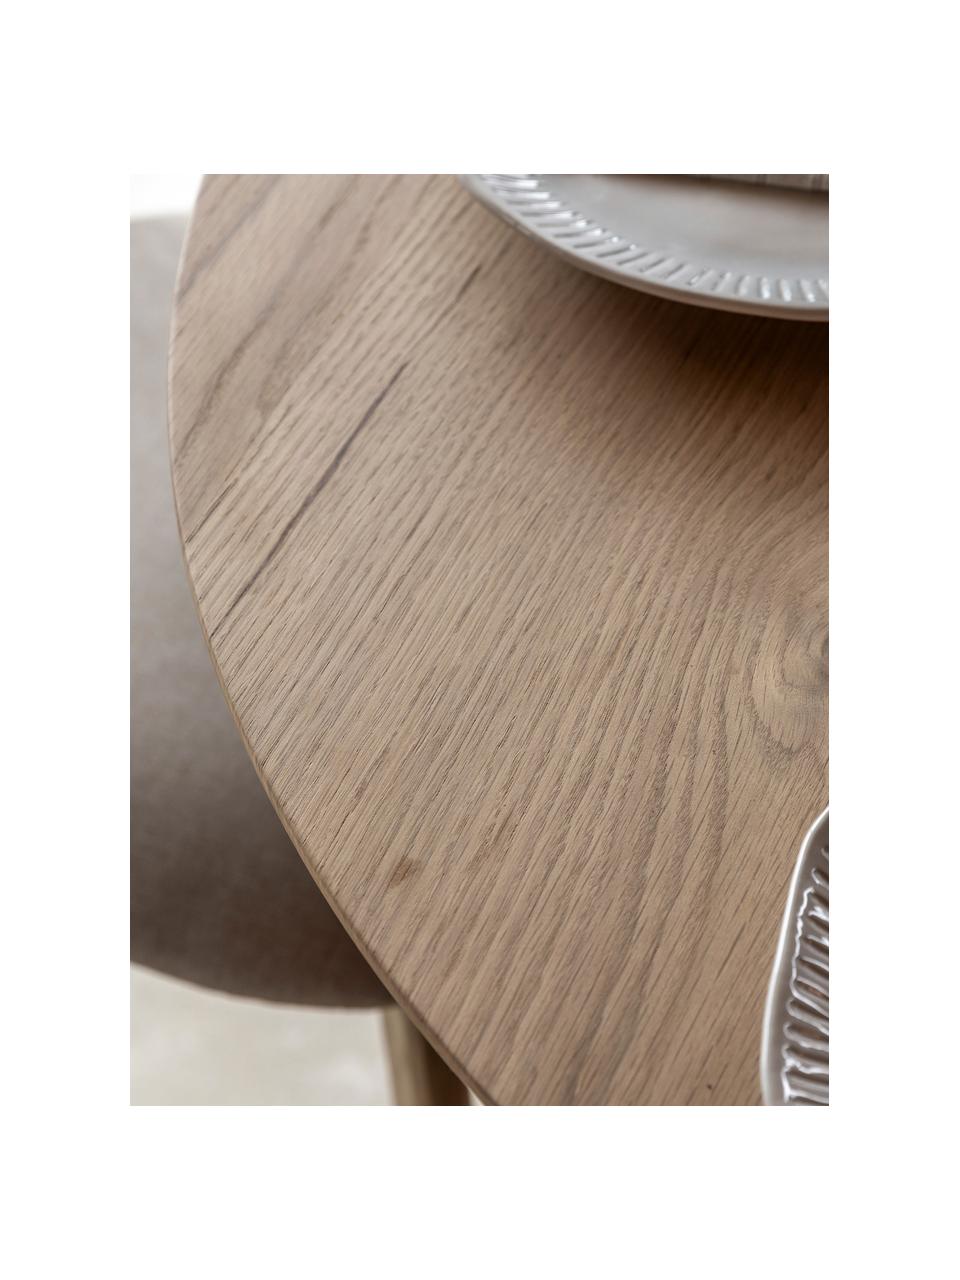 Okrągły stół do jadalni z drewna dębowego Hatfield, Ø 110 cm, Blat: drewno kauczukowe z forni, Nogi: płyta pilśniowa średniej , Drewno dębowe, Ø 110 cm